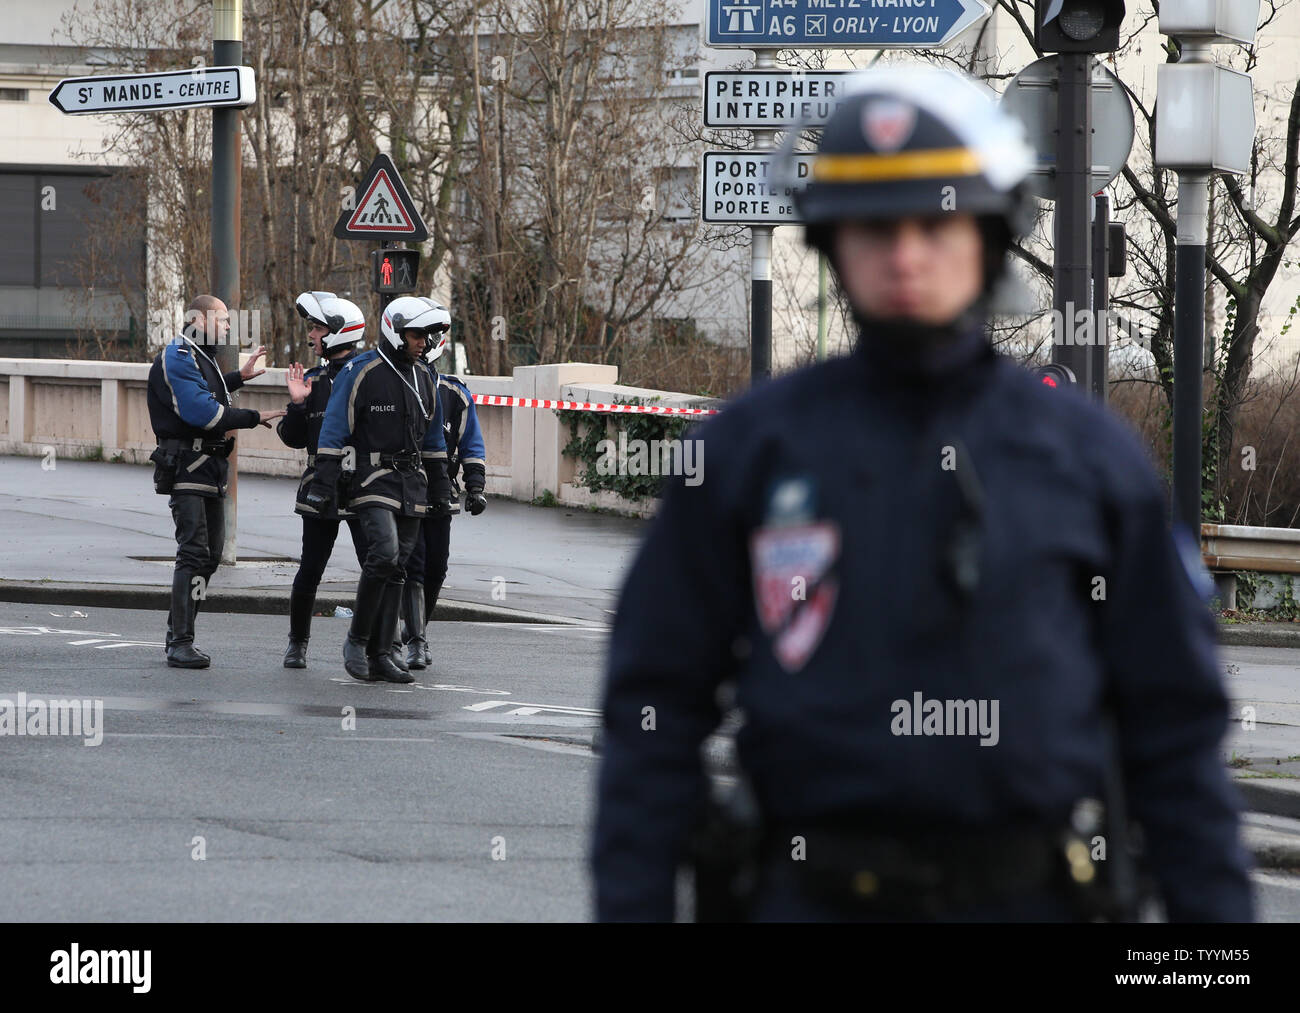 Polizei Block die Straße während einer Geiselnahme Situation in einem nahe gelegenen Hyper Casher Supermarkt Supermarkt in Paris, am 9. Januar 2015. Die Polizei startete einen Angriff auf den Supermarkt Tötung der Schütze. Foto von Eco Clement/UPI Stockfoto